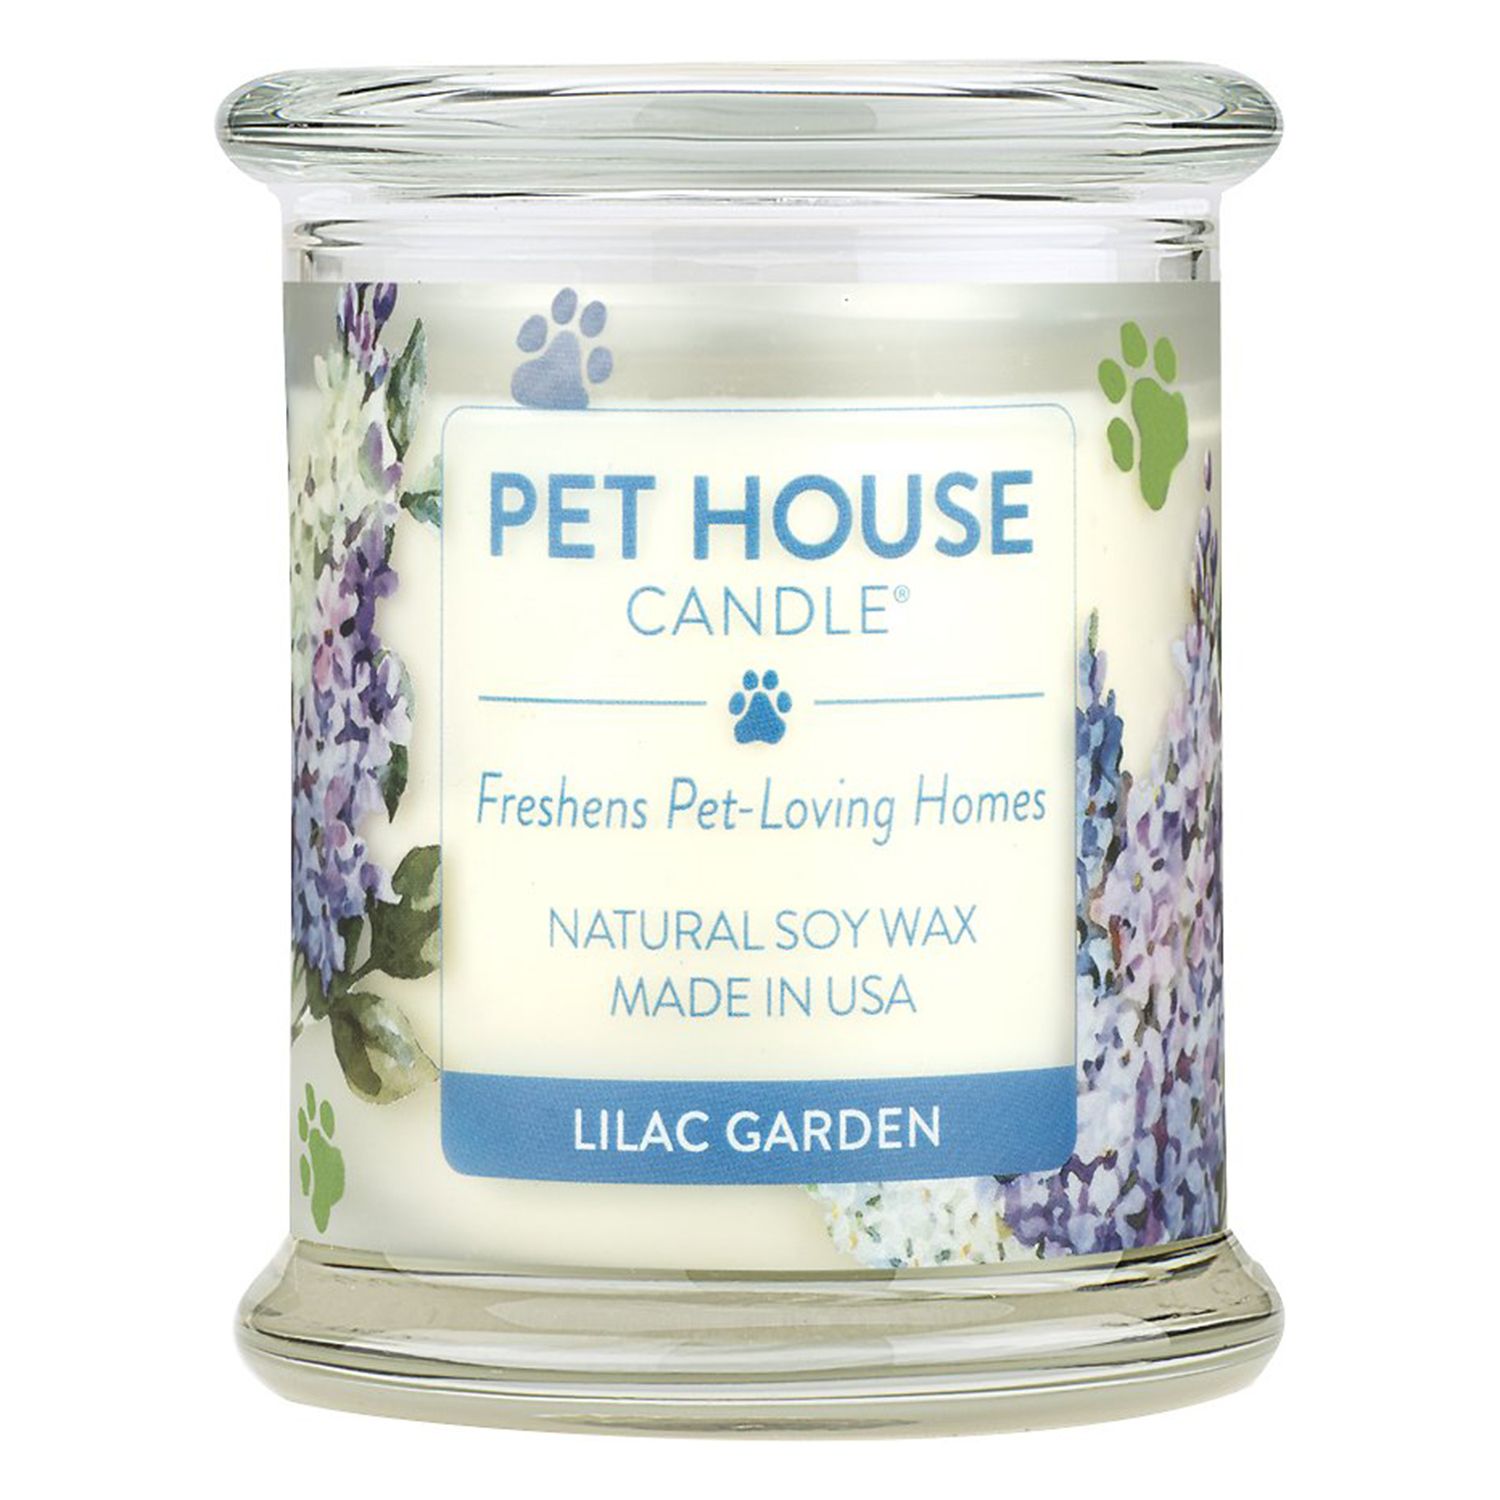 Pet House Lilac Gardenin luonnollinen soijakynttilä